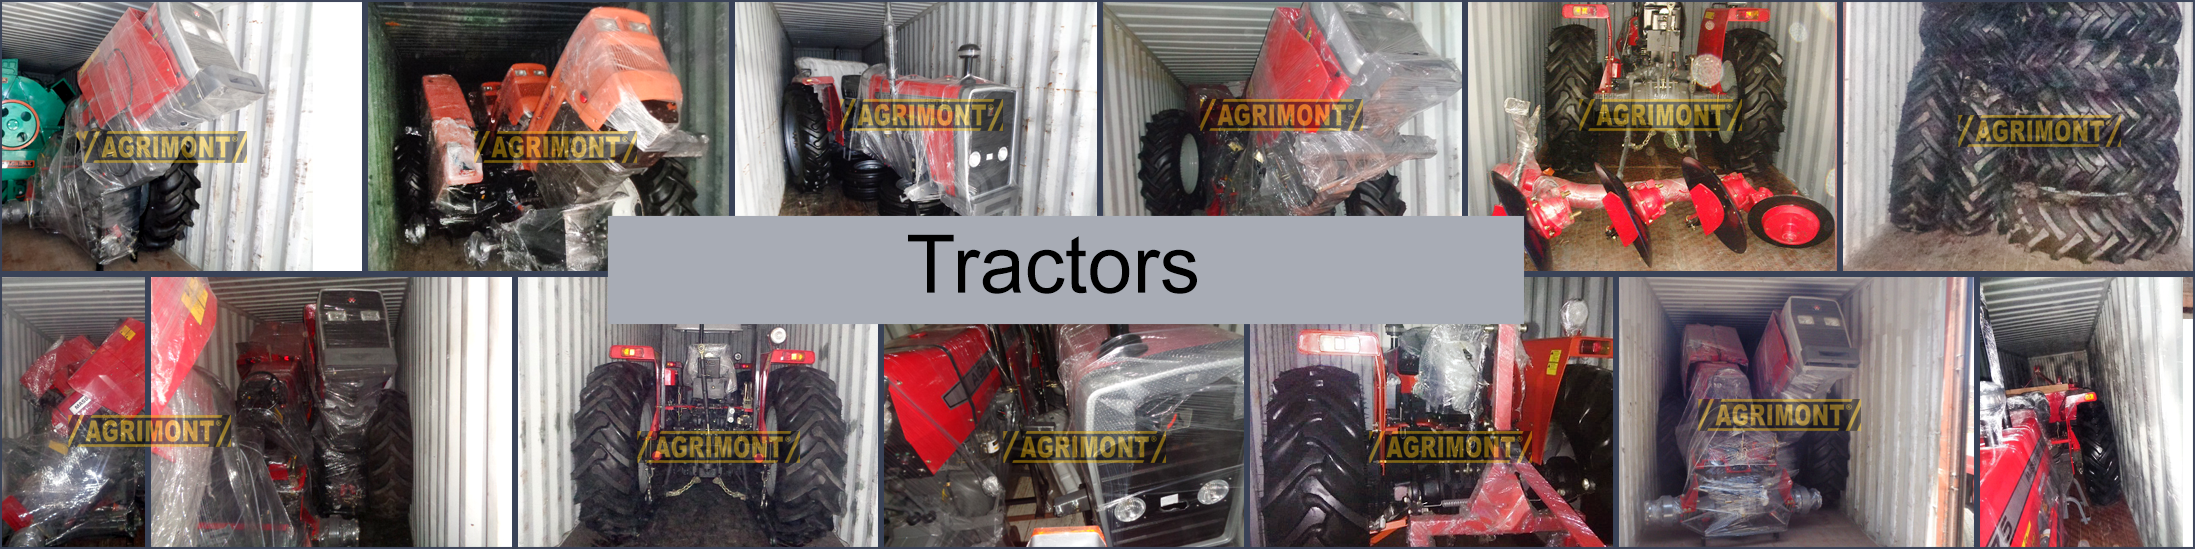 Tractors Suppliers